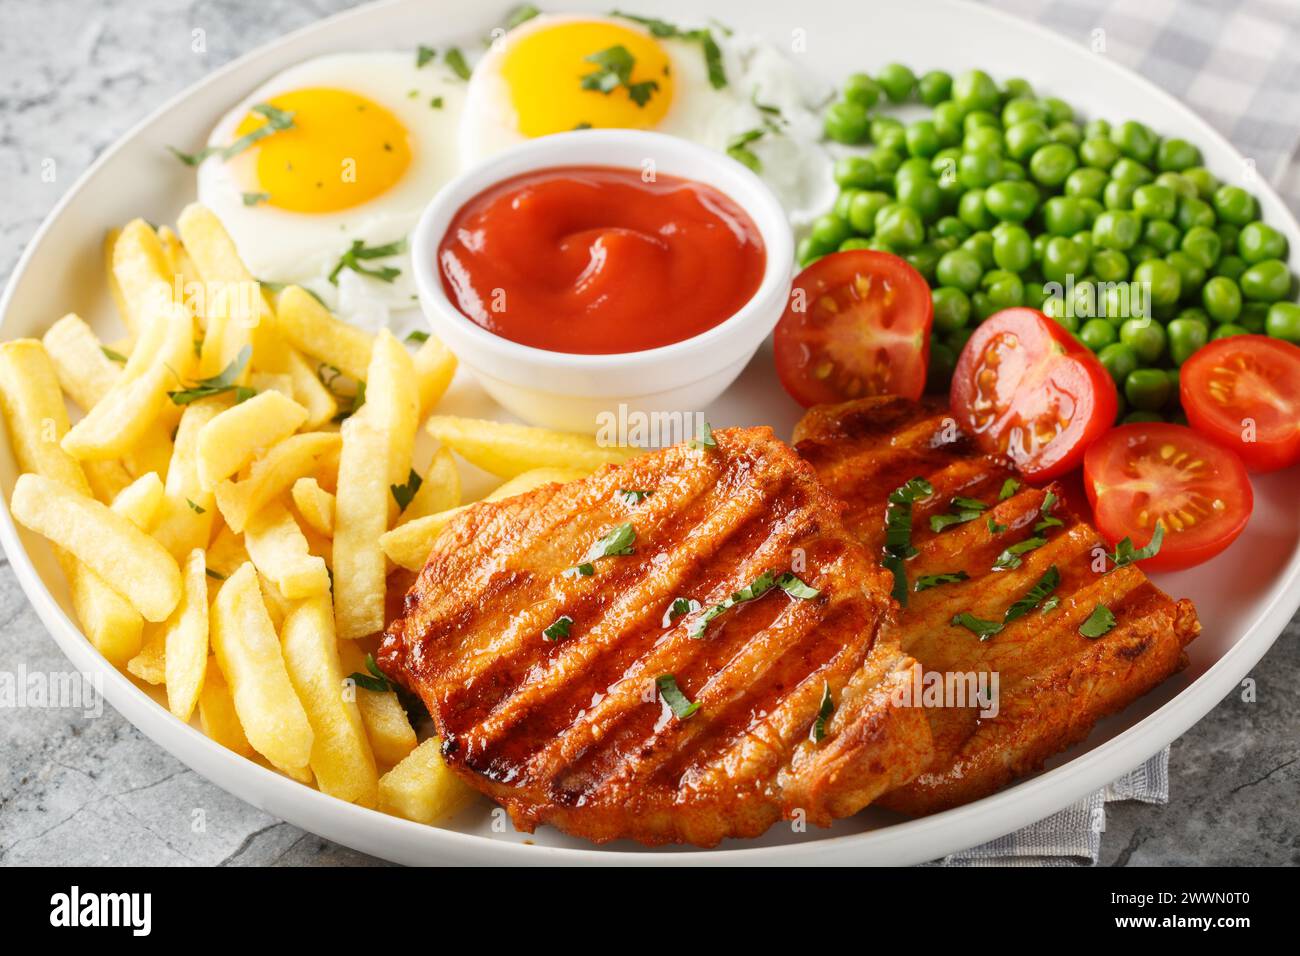 Steak de longe de porc frit servi avec des frites, des œufs fi, des pois verts et des tomates fraîches en gros plan sur l'assiette sur la table. Horizontal Banque D'Images